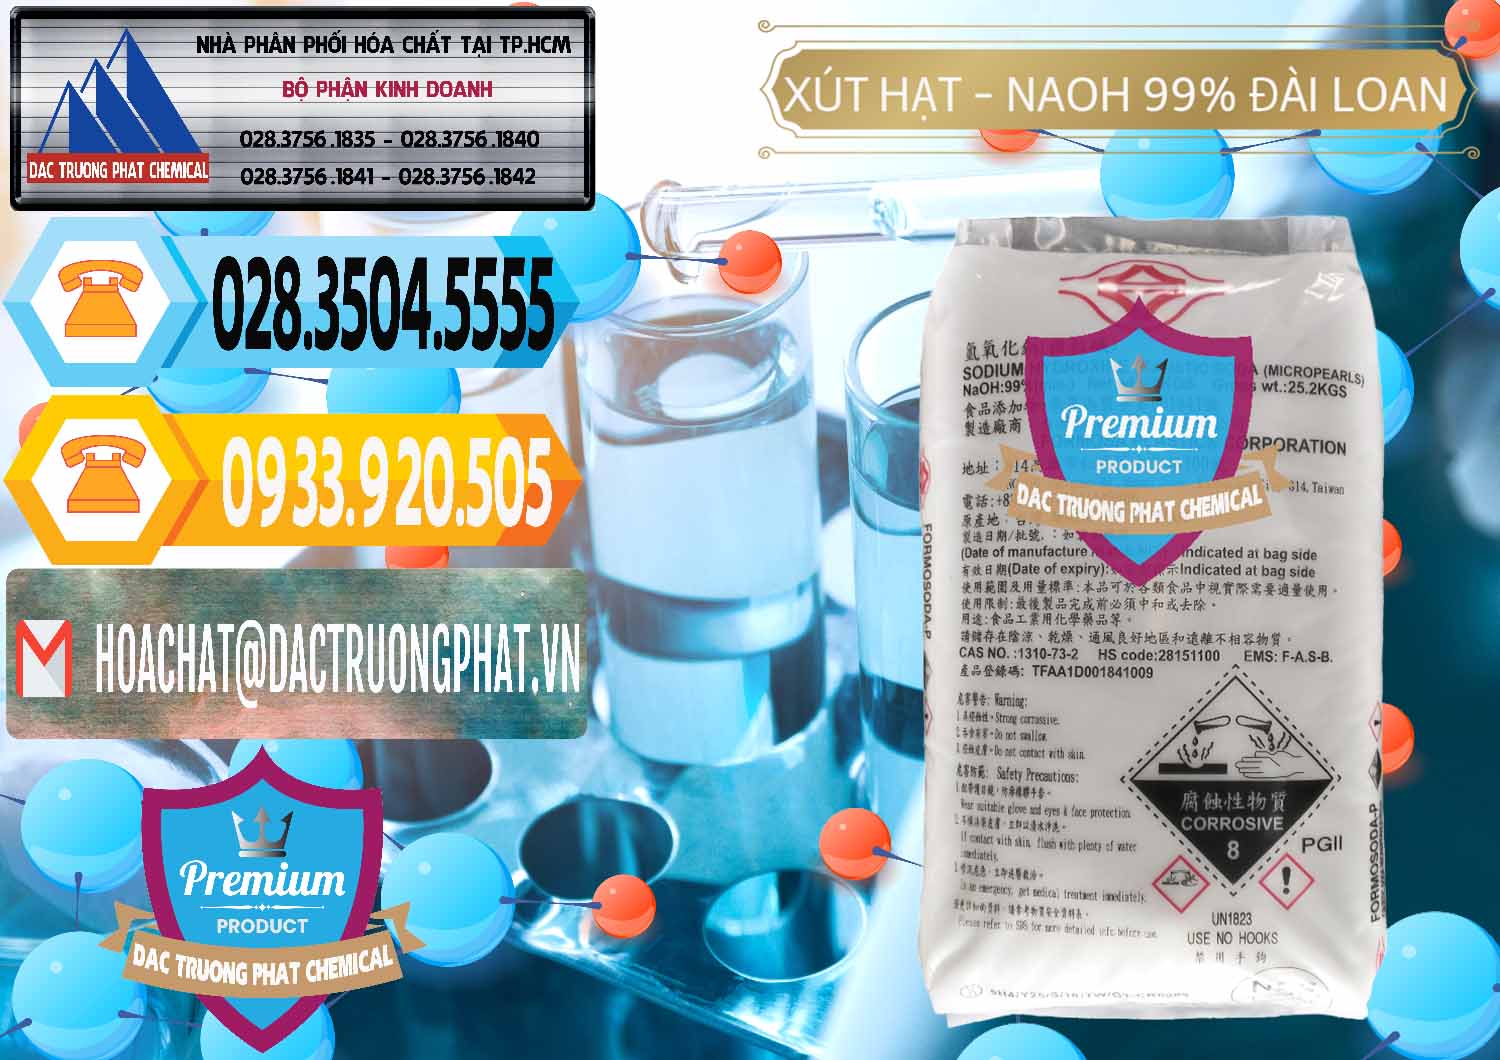 Chuyên phân phối và bán Xút Hạt - NaOH Bột 99% Đài Loan Taiwan Formosa - 0167 - Cty phân phối - cung cấp hóa chất tại TP.HCM - hoachattayrua.net